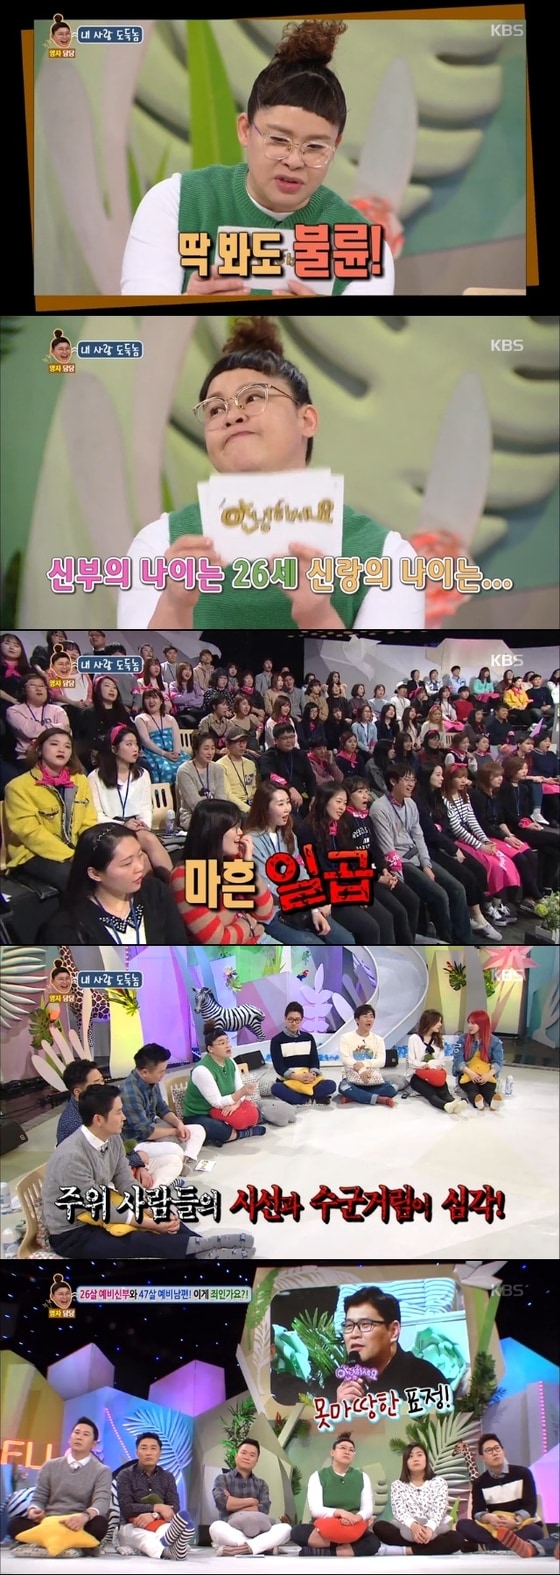 '안녕하세요'에 21살차 커플이 출연했다. © News1star / KBS2 '안녕하세요' 캡처